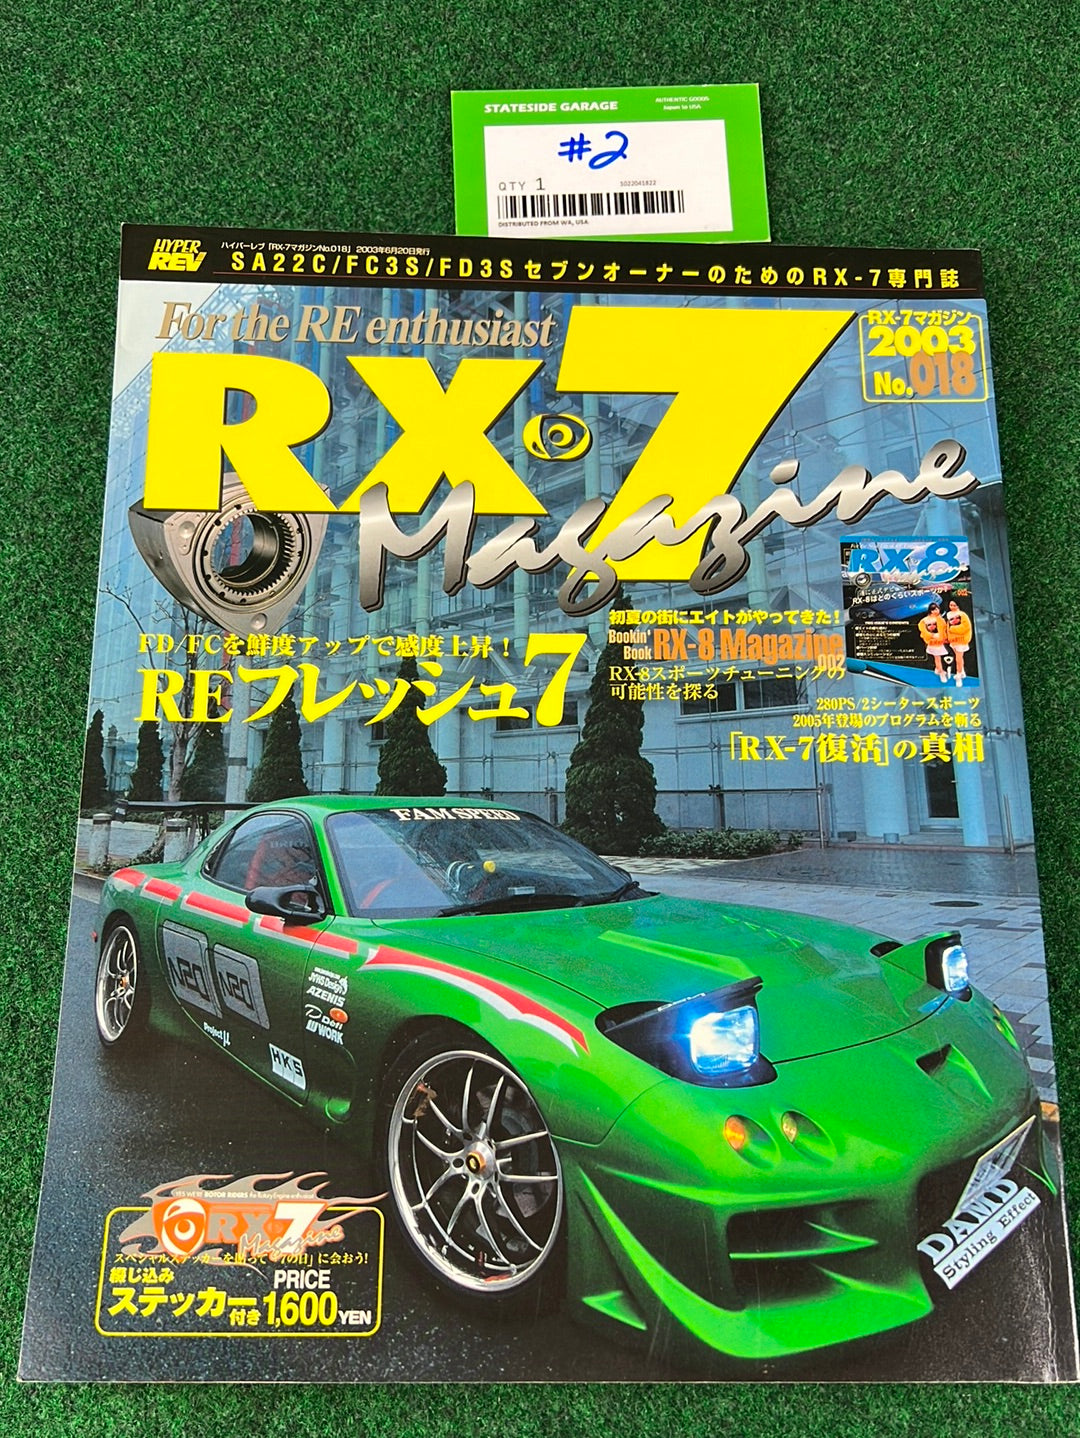 RX7 Magazine - No. 016 through No. 019